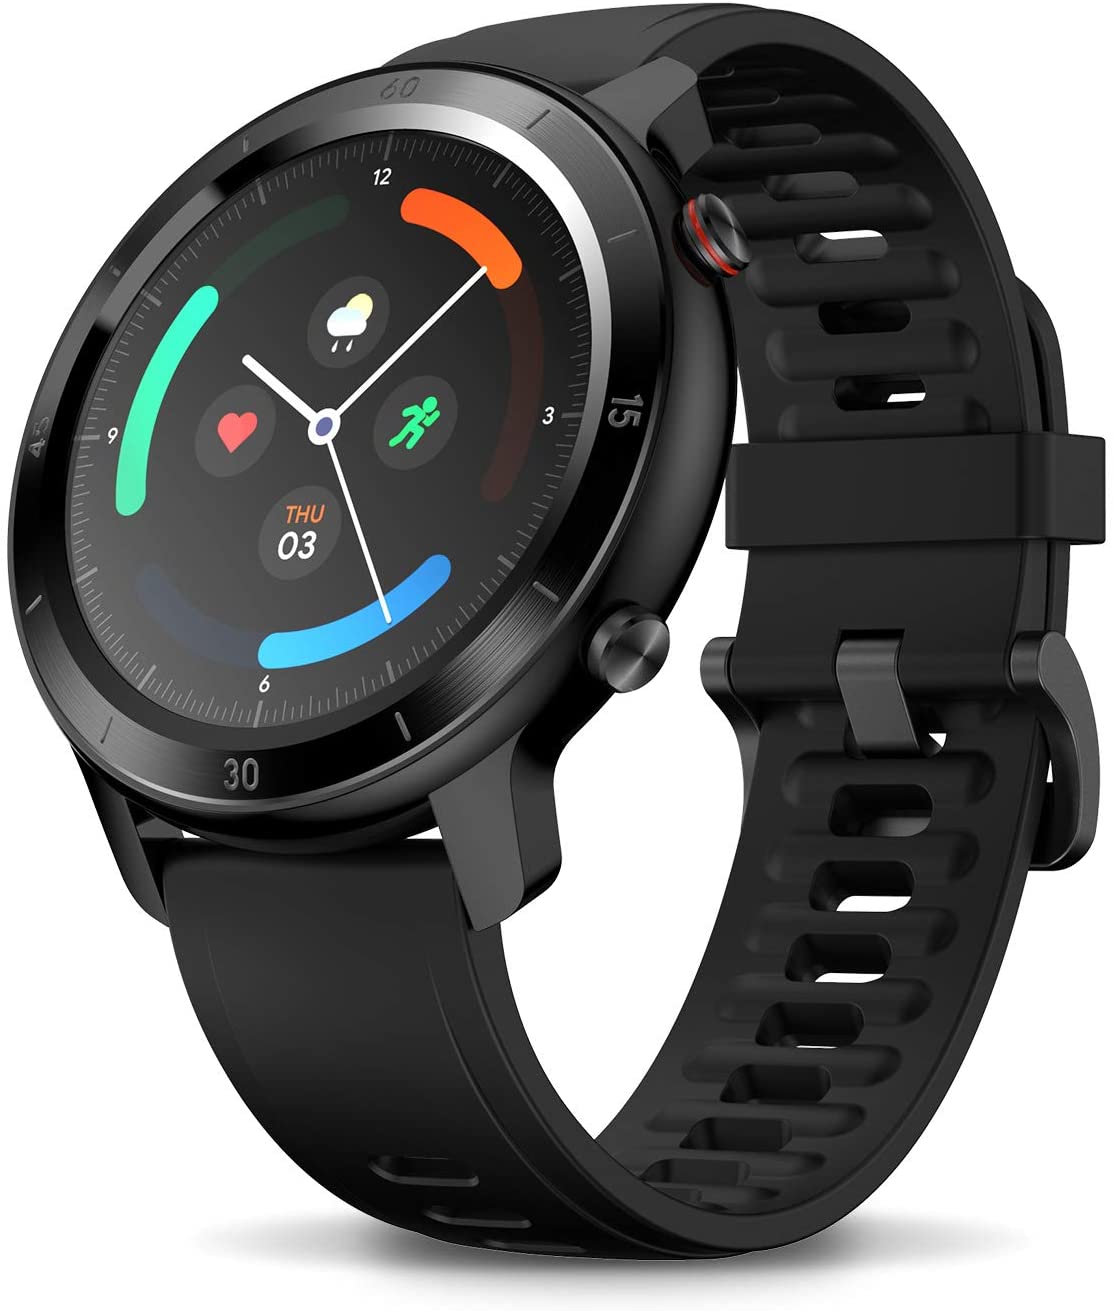 Smartwatch mobvoi ticwatch gtx black